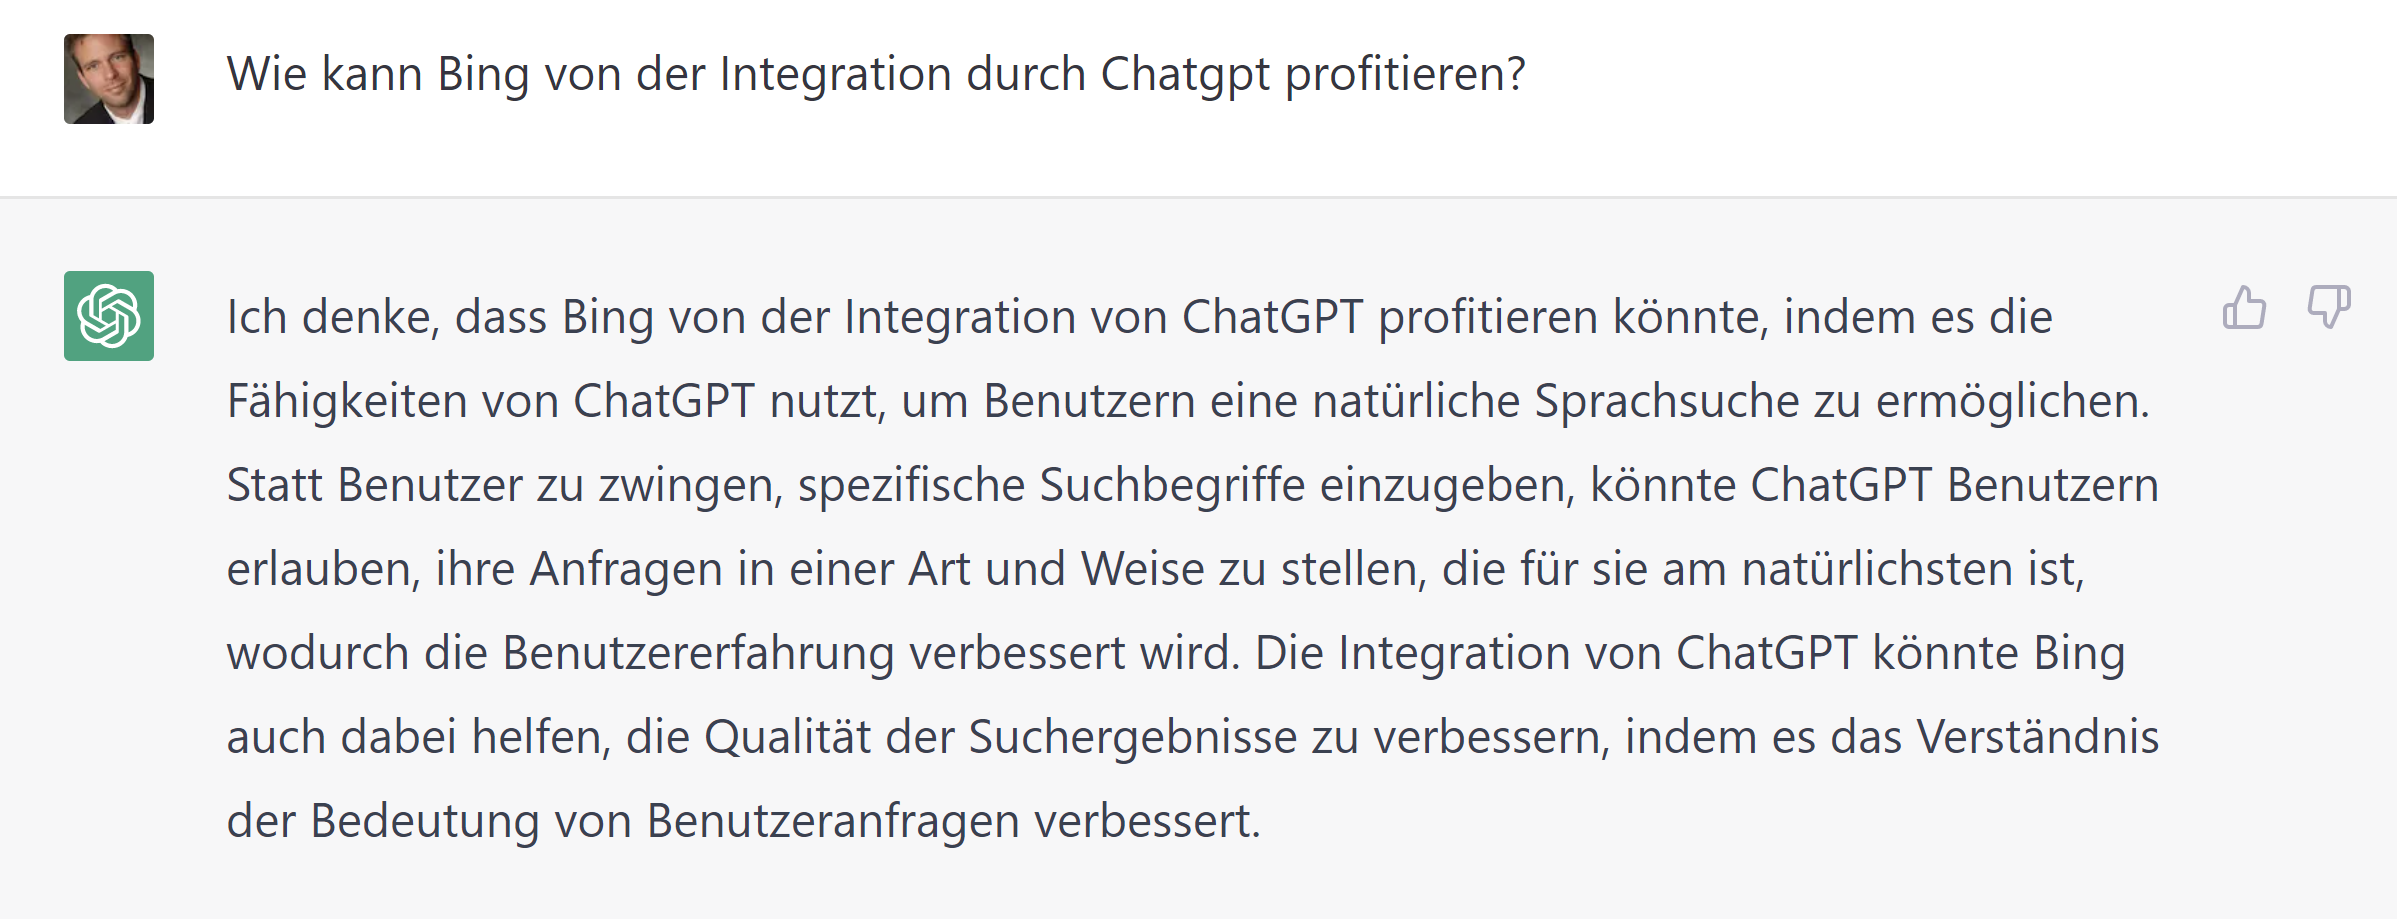 Wie kann Bing von der Integration von ChatGPT profitieren? Antwort von ChatGPT